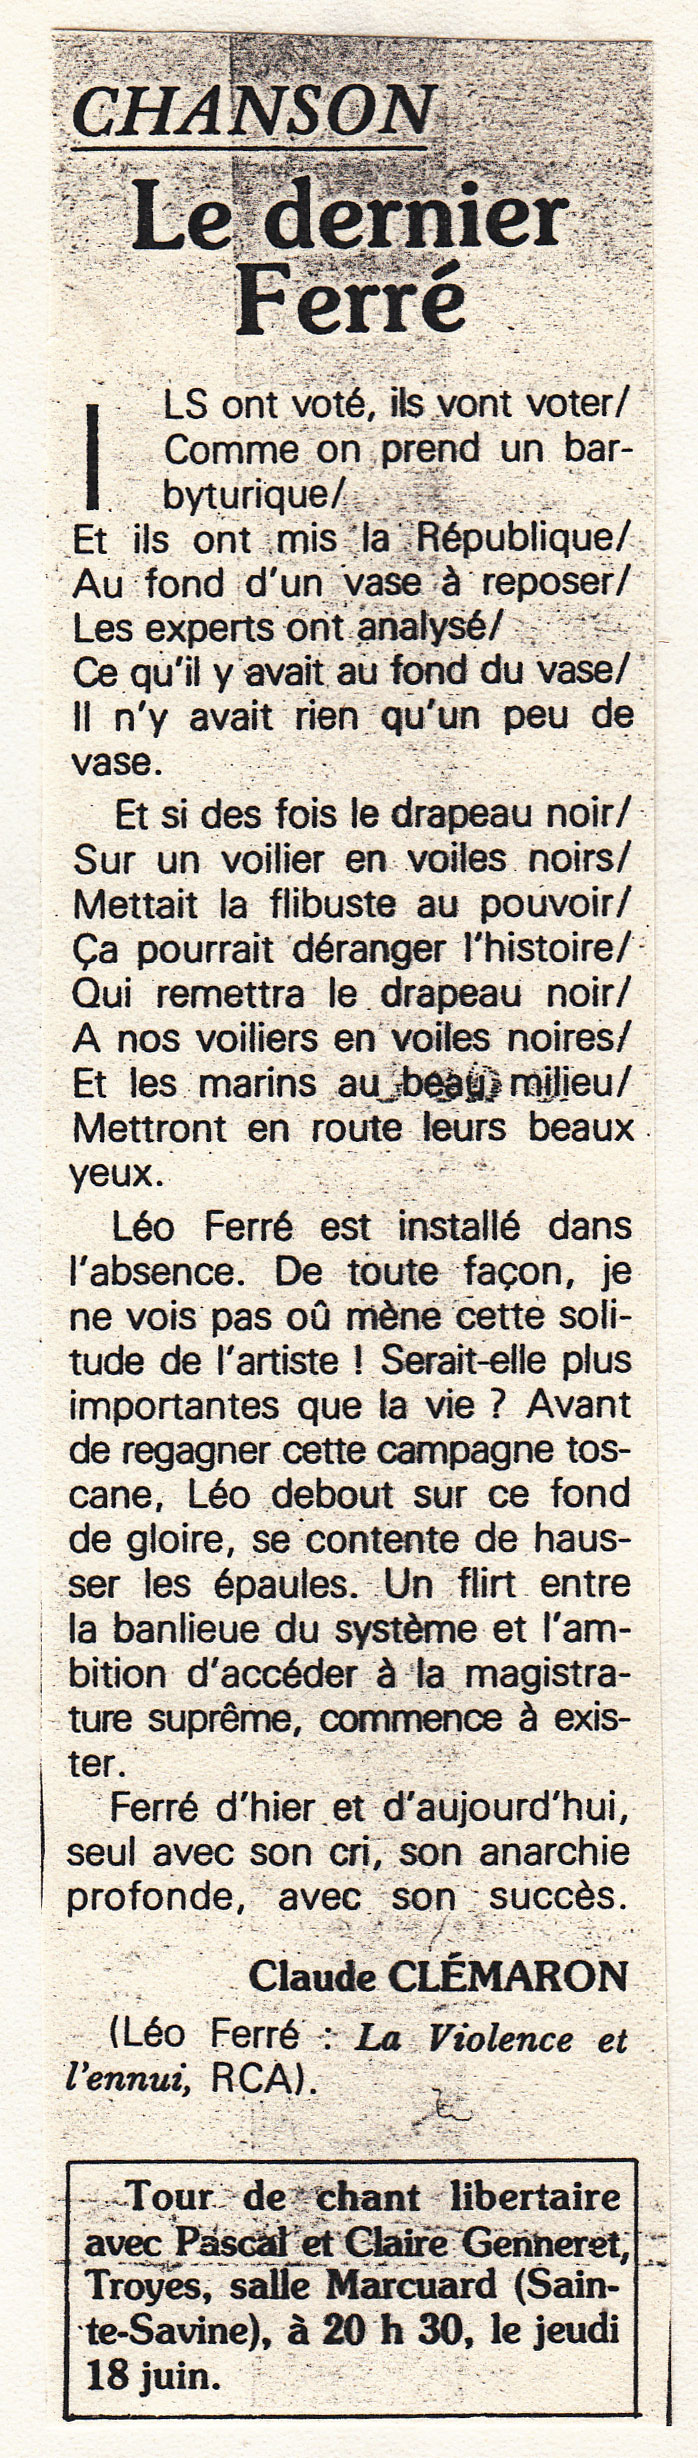 Léo Ferré - Le Monde libertaire de 11 juin 1981